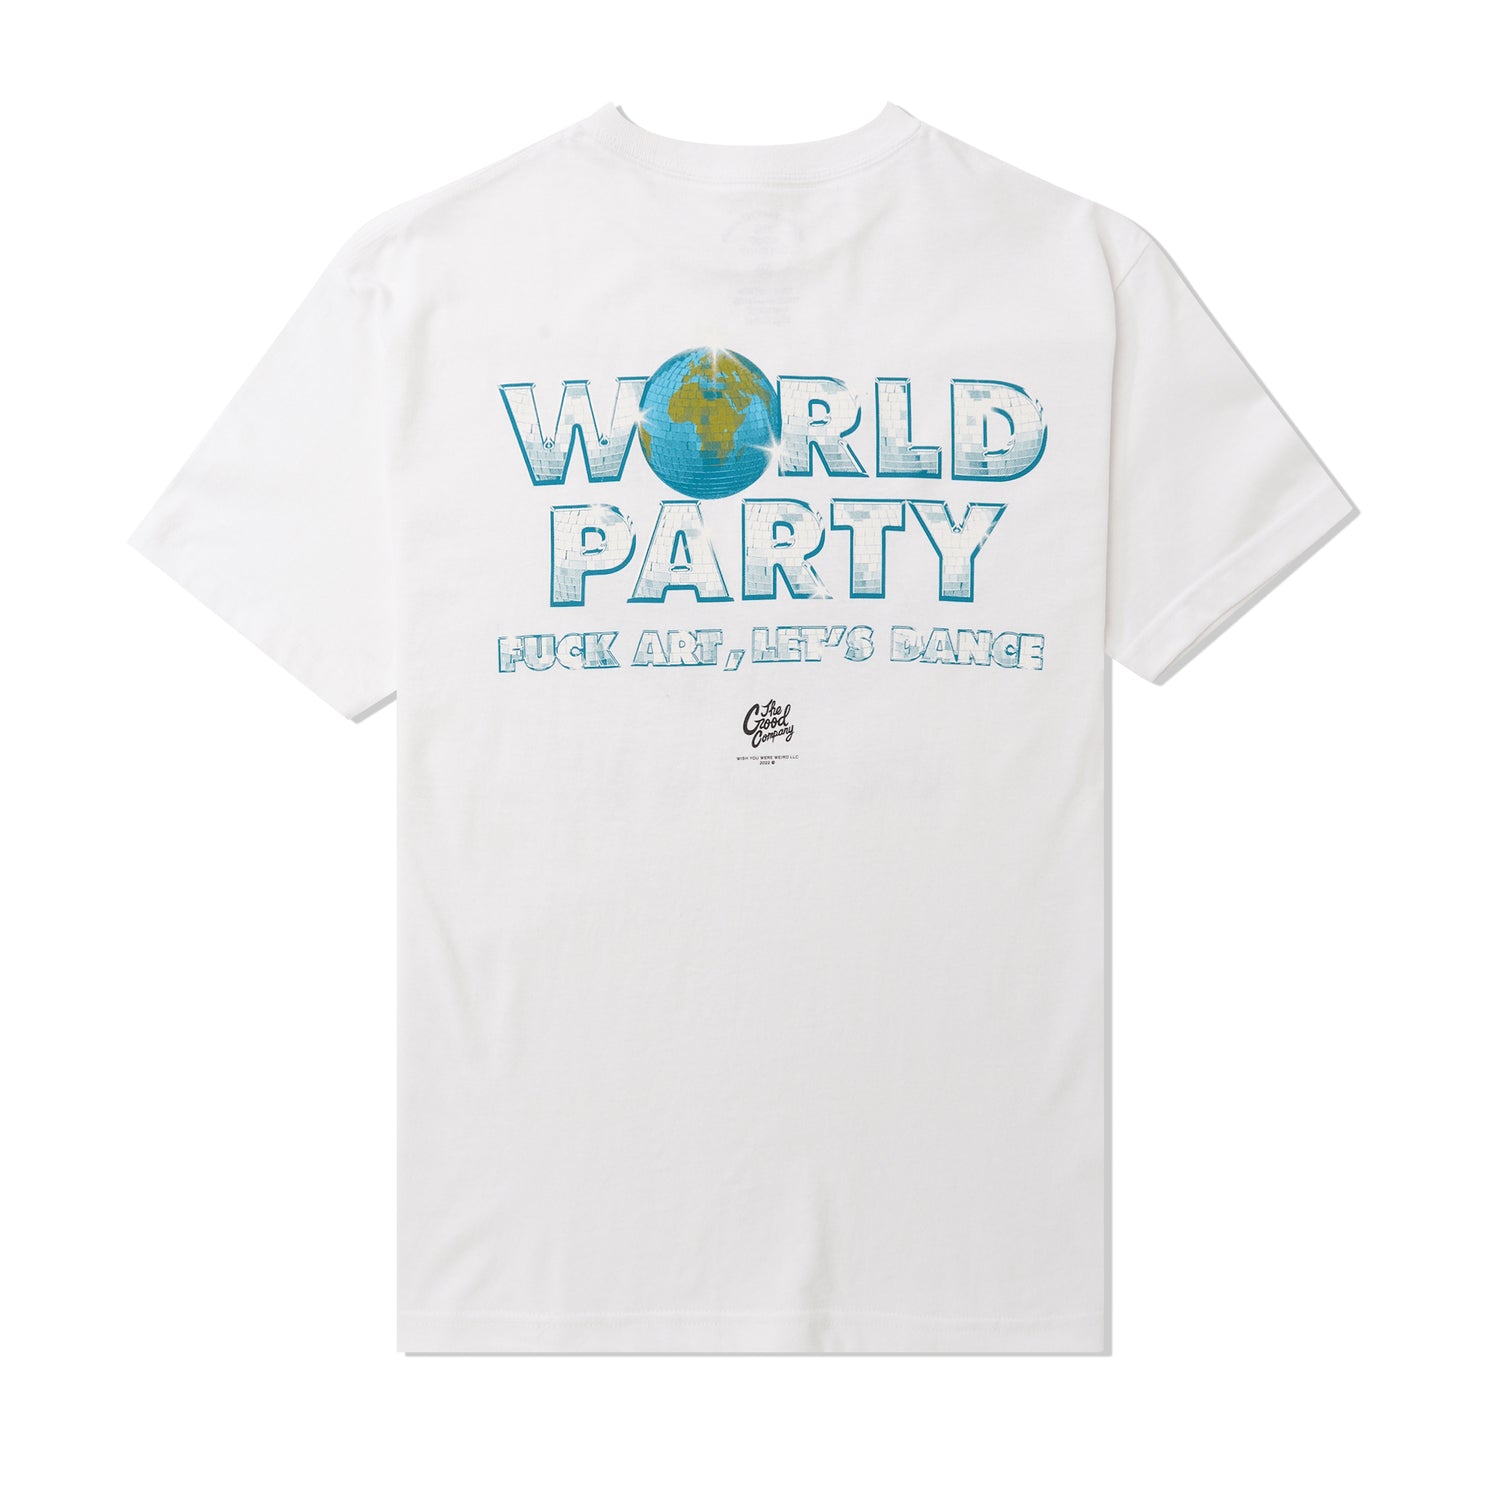 World Party Tee, White